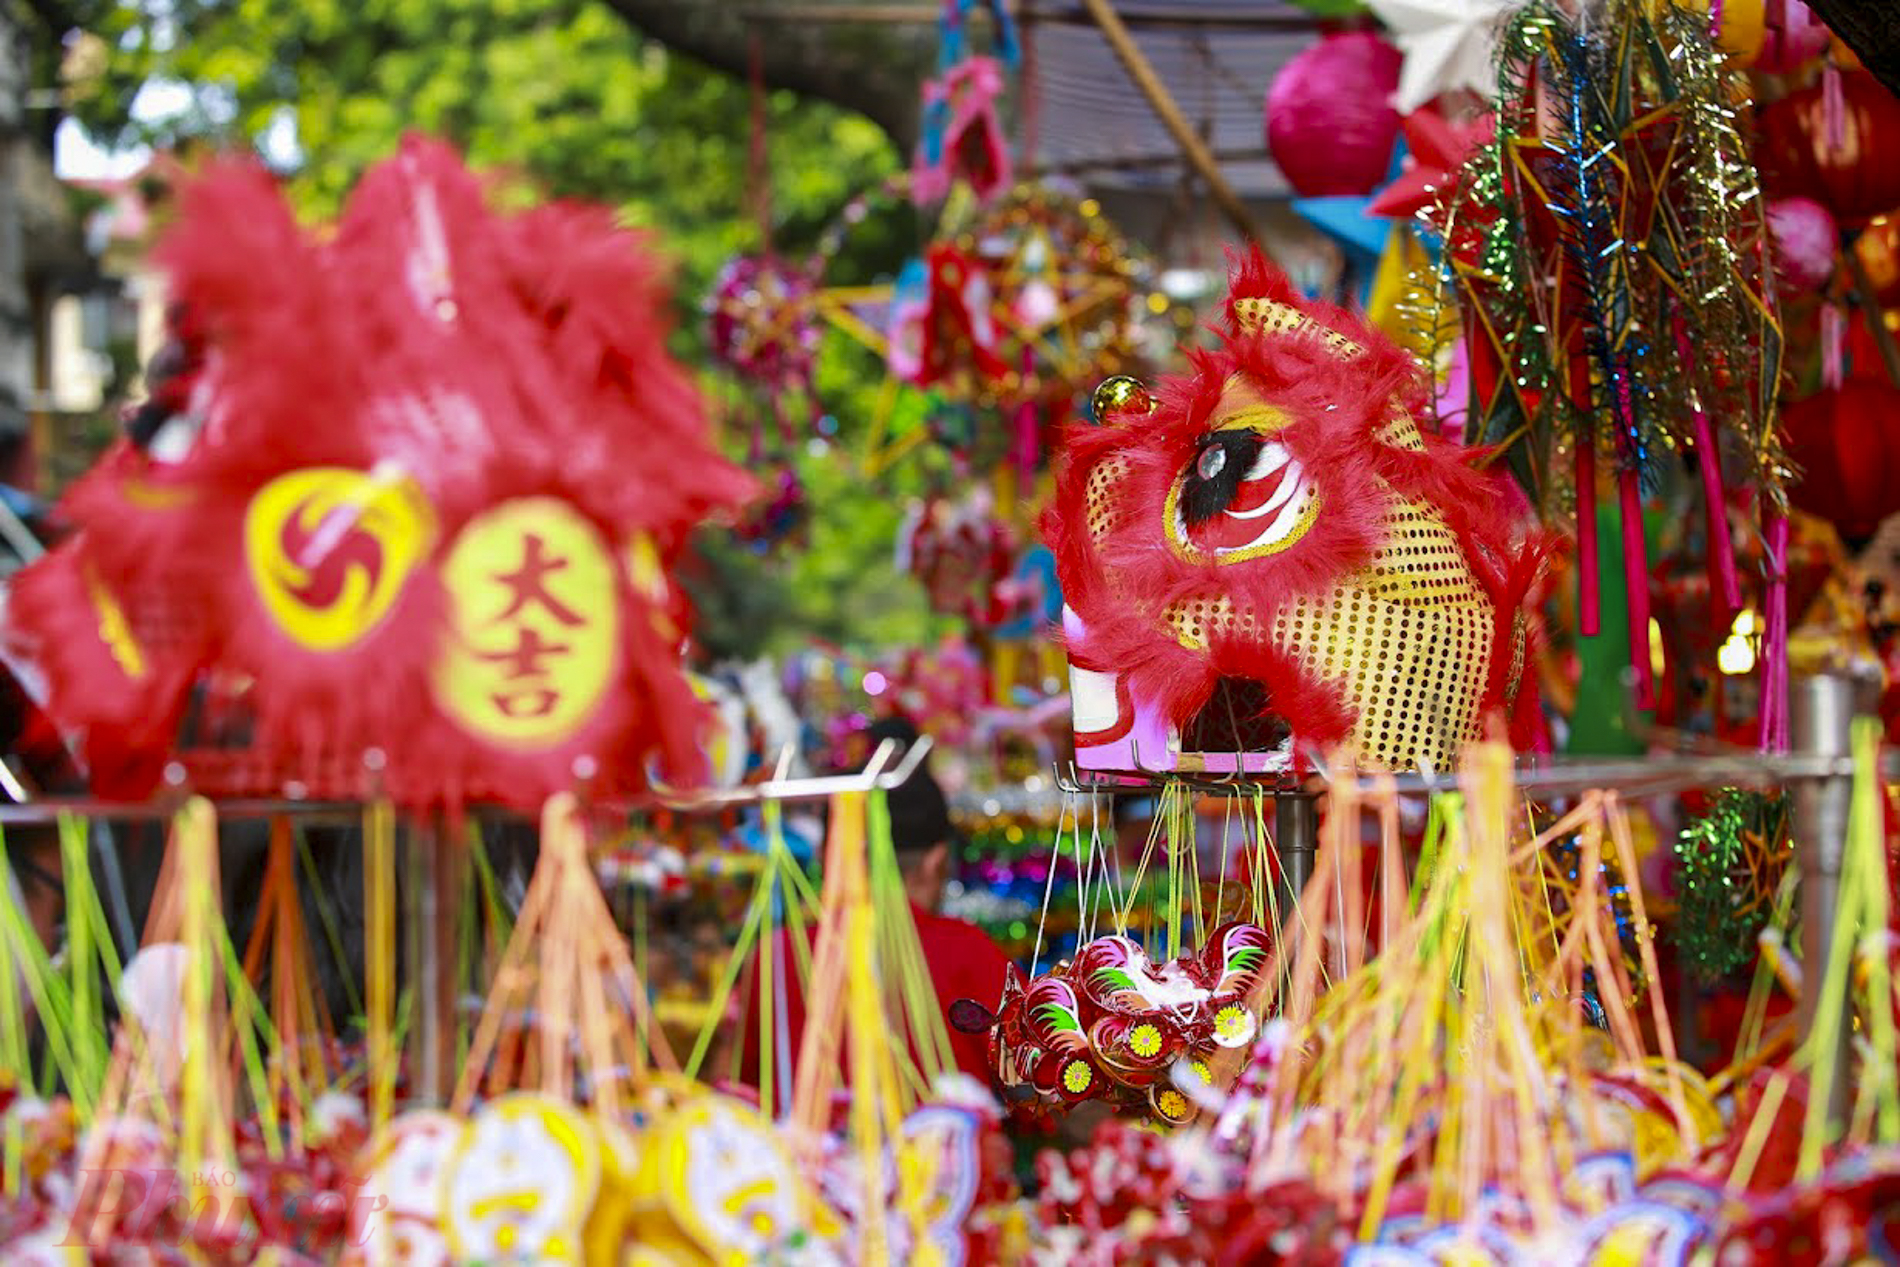 Năm nay tại phố Hàng Mã bày bán đa phần là các món đồ chơi truyền thống như đèn lồng, đèn ông sao, mặt nạ… Tại các cửa hàng bán đồ chơi trẻ em trên các phố Hàng Mã, các sản phẩm truyền thống được sản xuất tại Việt Nam chiếm khoảng 60% trên các gian hàng đồ chơi, 40% còn lại là hàng đã nhập khẩu từ năm trước.